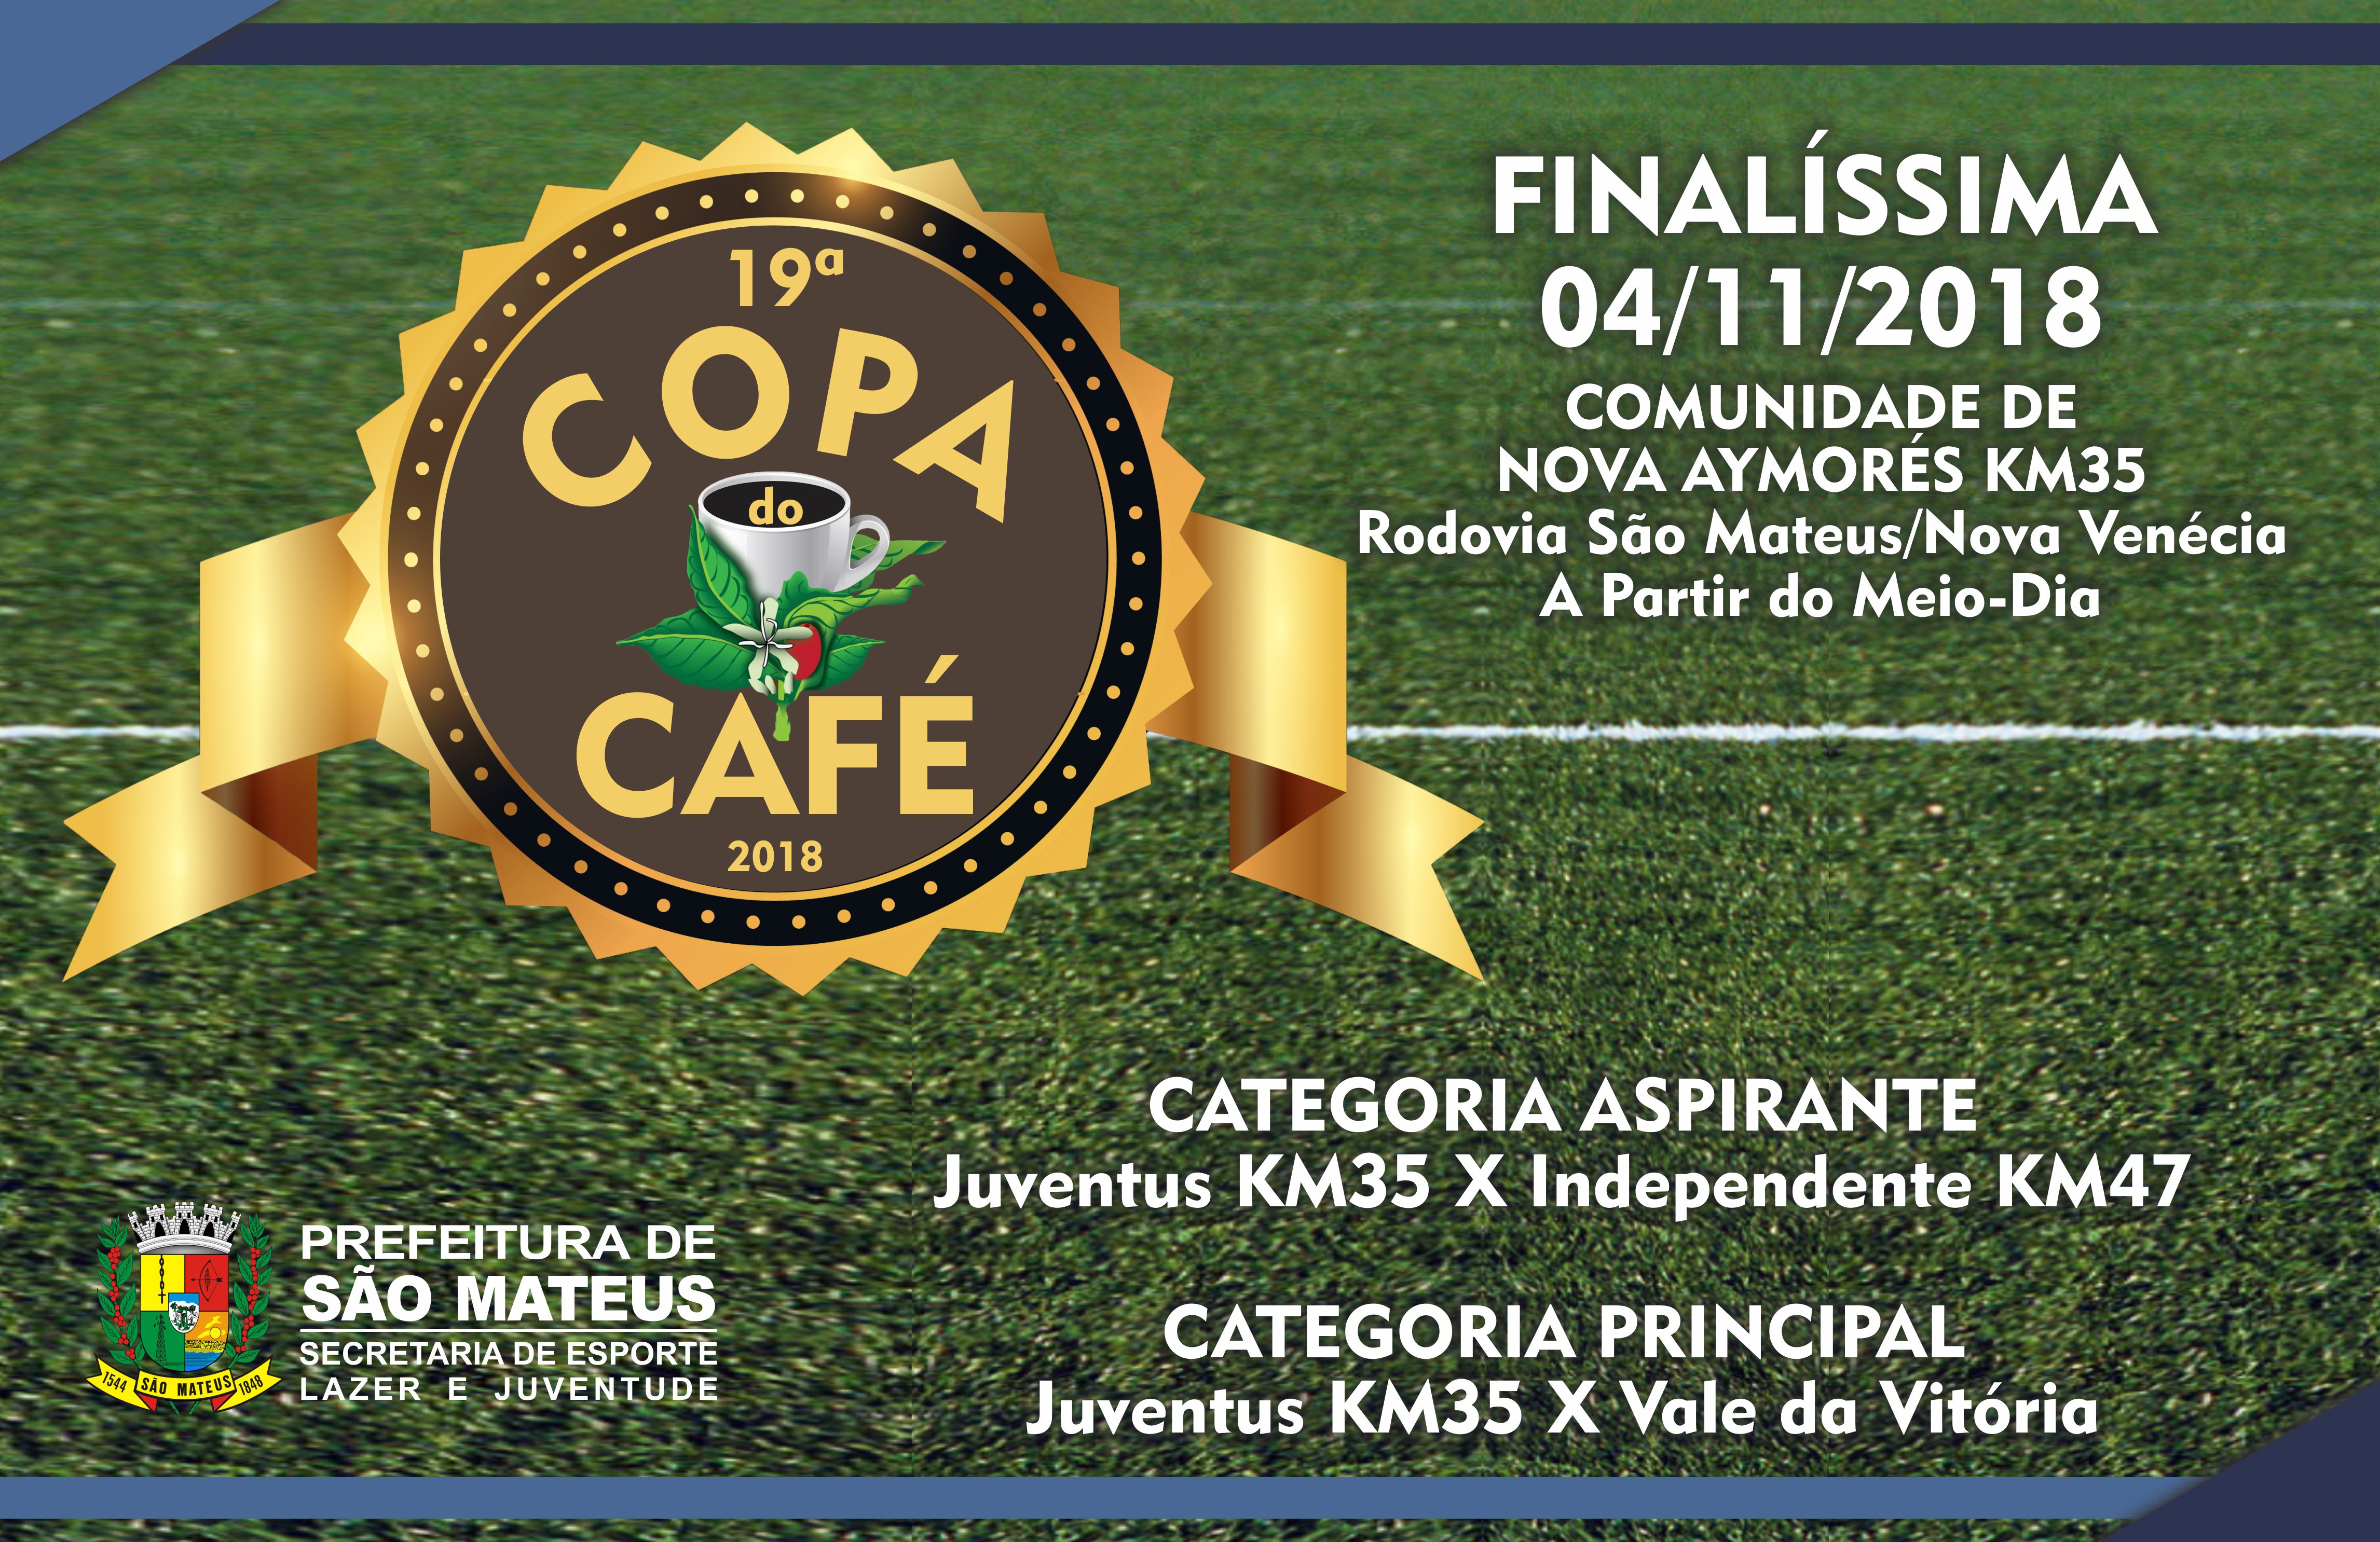 Final da Copa do Café ocorre em Novembro